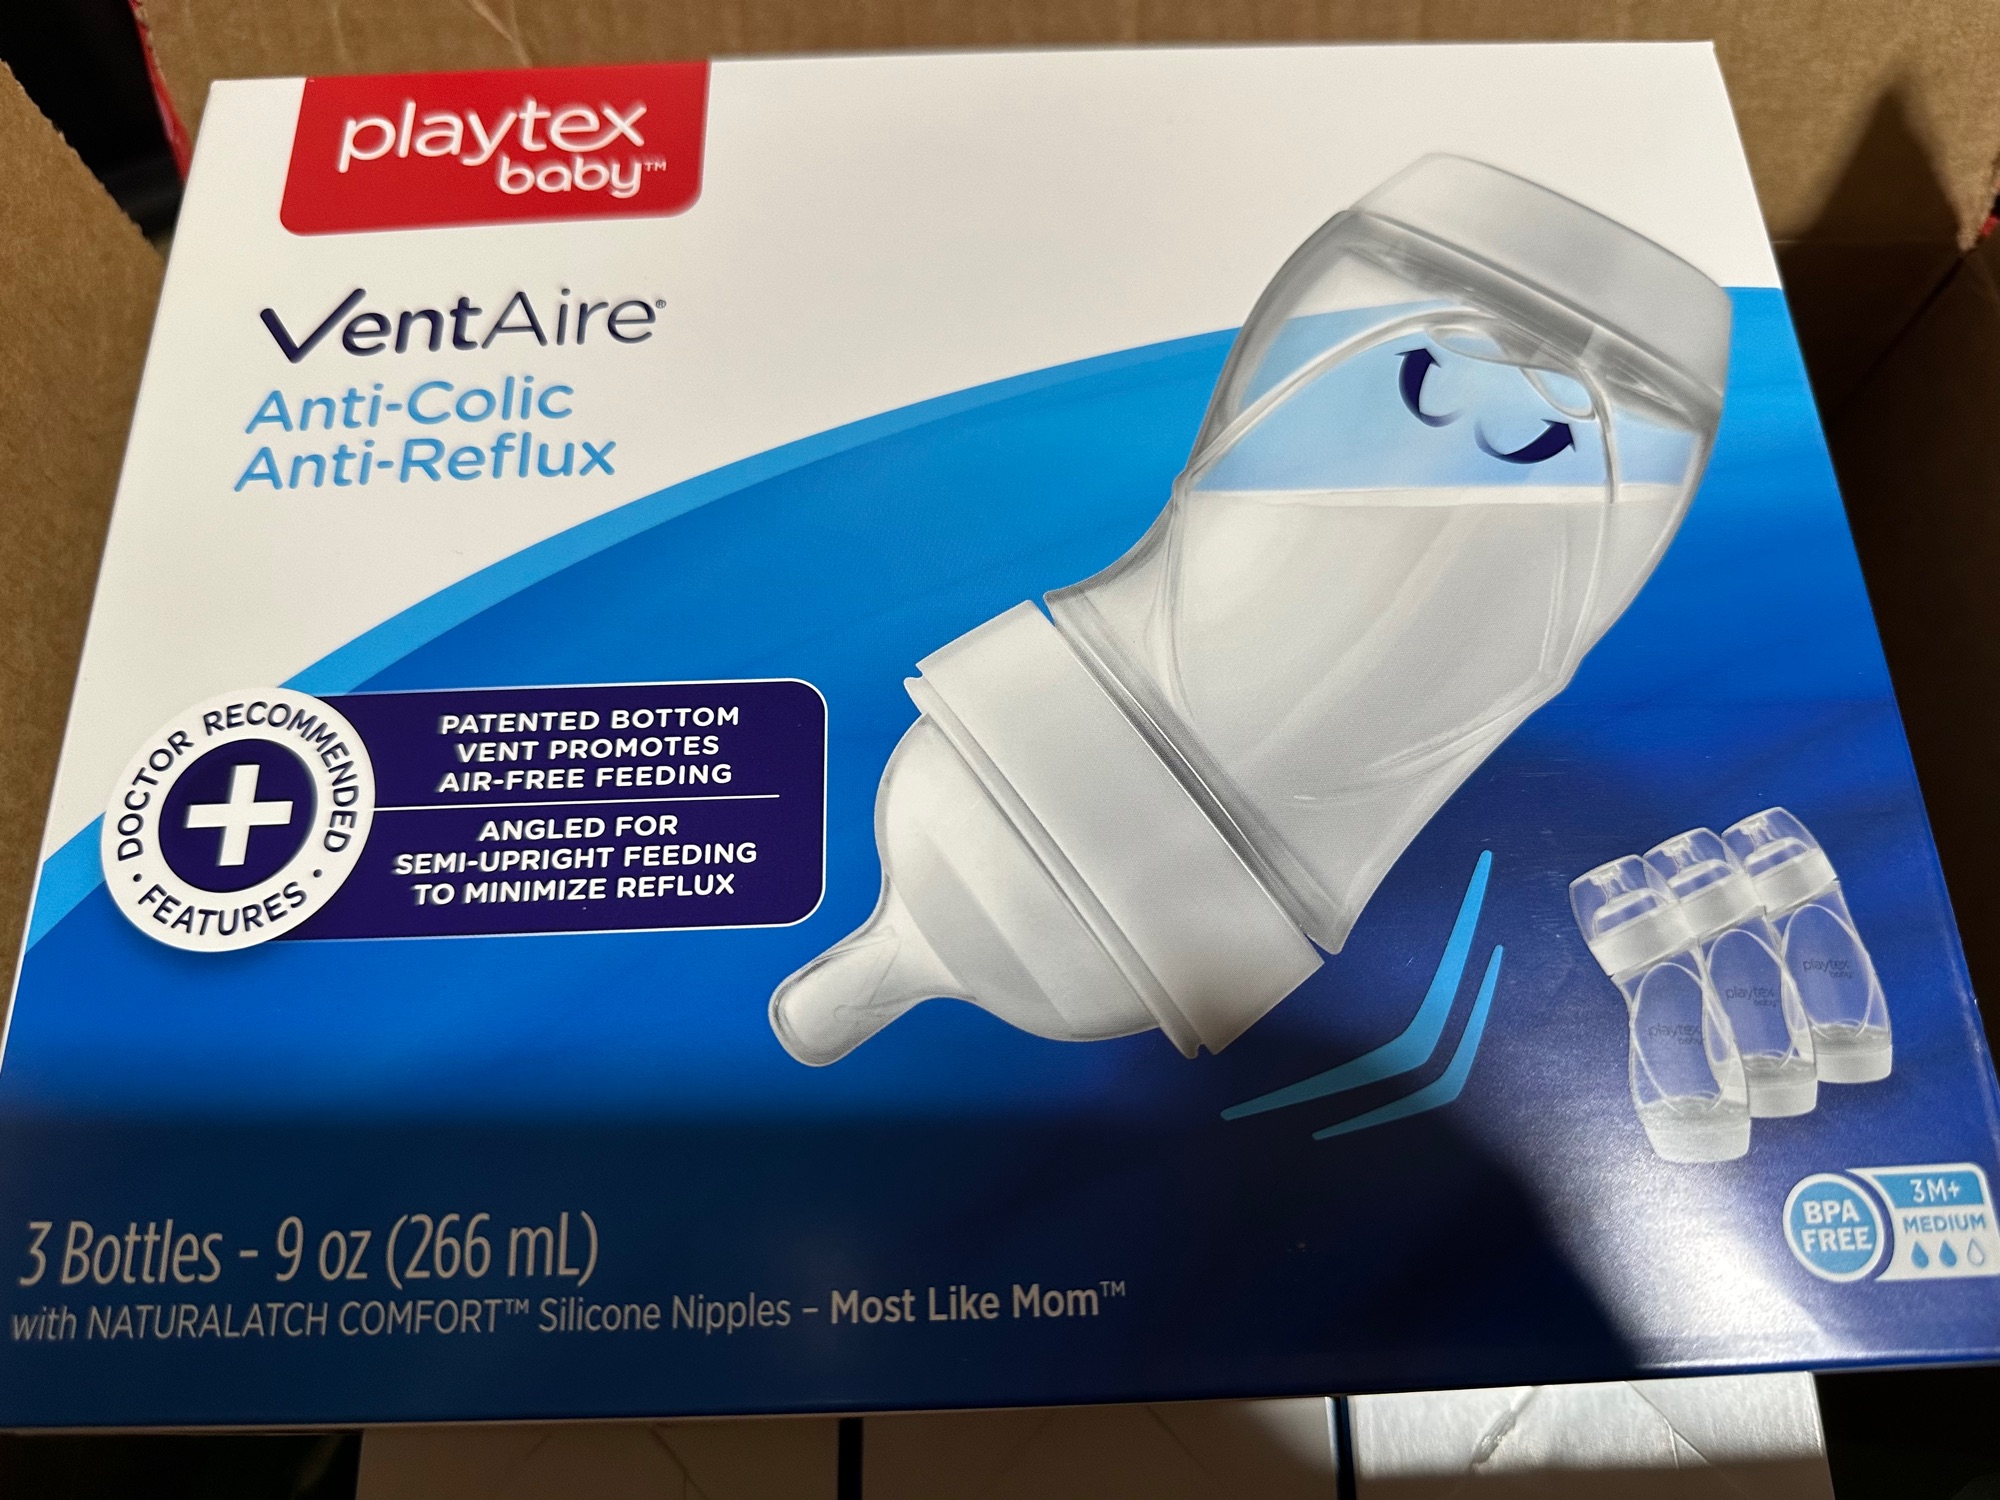 Buy Playtex Ventaire online